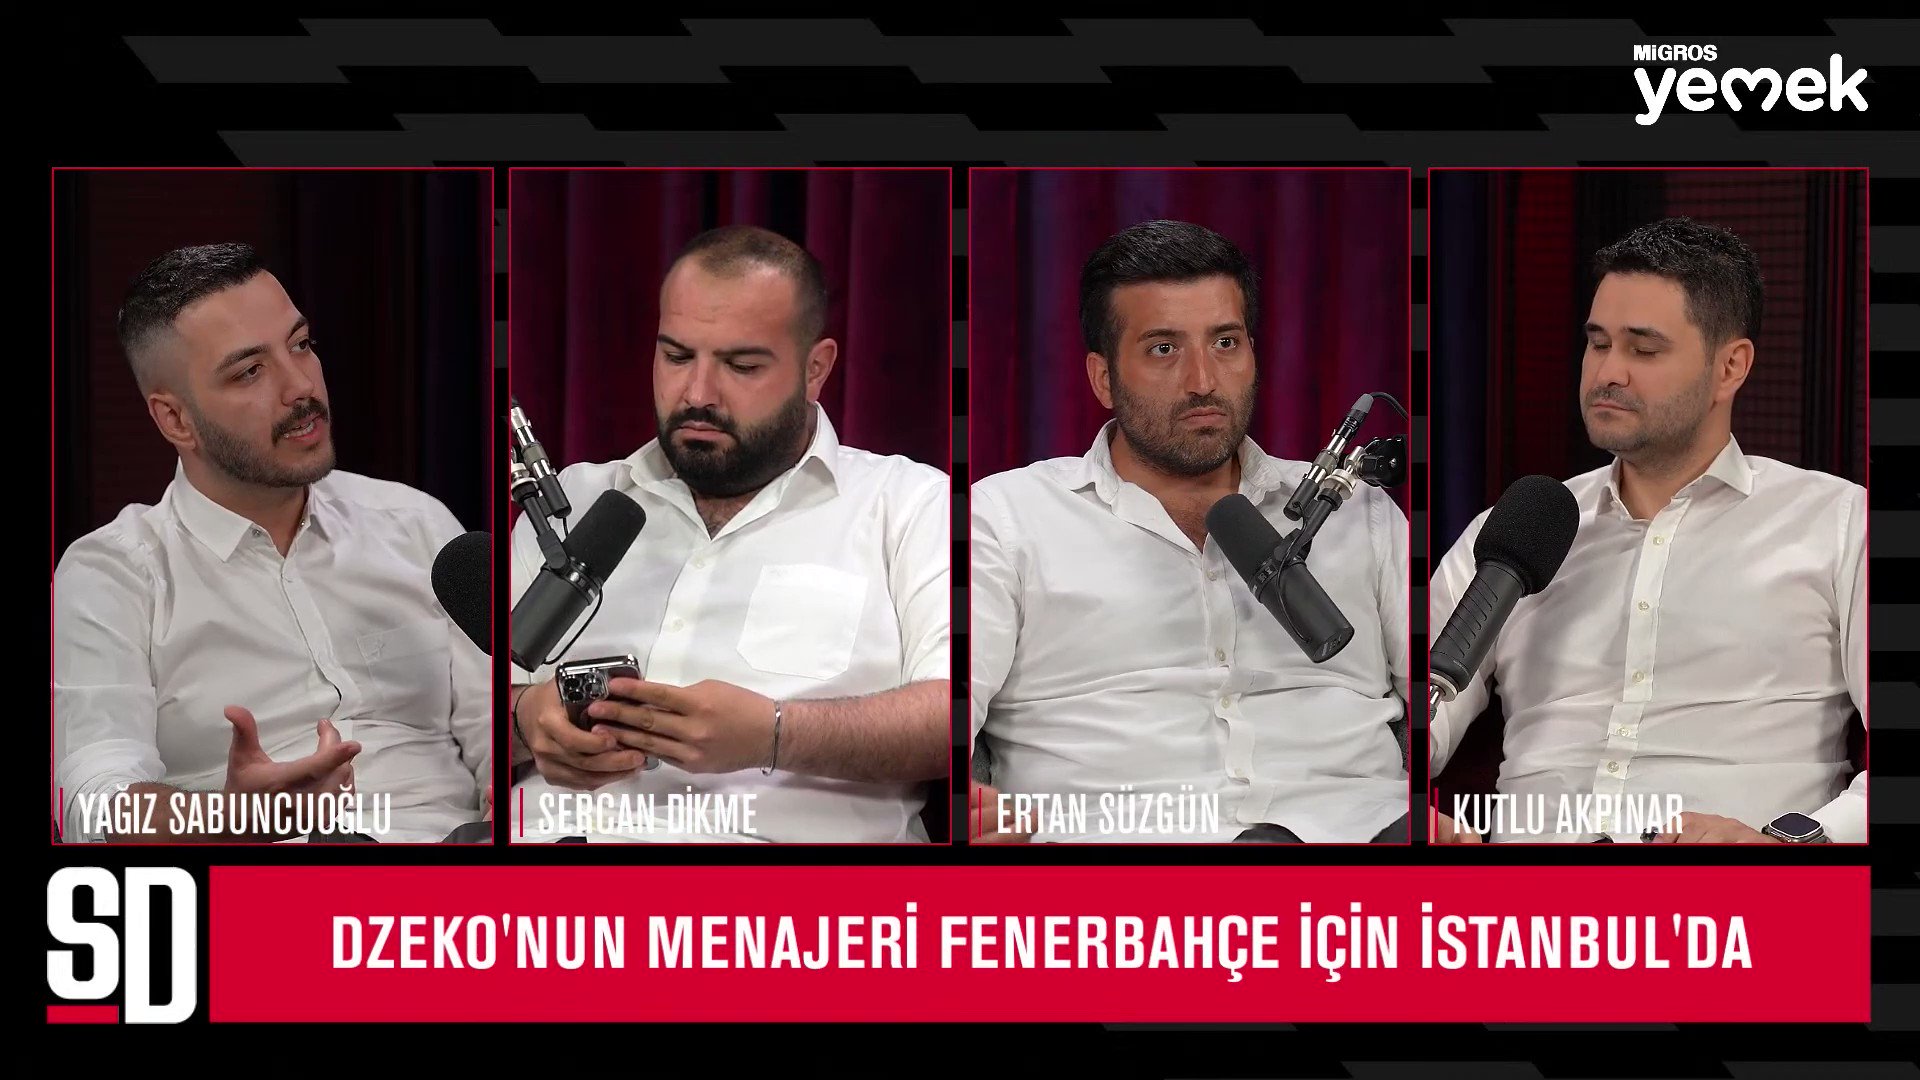 Sports Digitale on X: "Edin Dzeko Fenerbahçe için doğru isim mi? 🤝 Migros  Hemen (@Migros_Turkiye) ile #işbirliği @yagosabuncuoglu x @kutlu_Akpinar  https://t.co/31NuDO3INh" / X